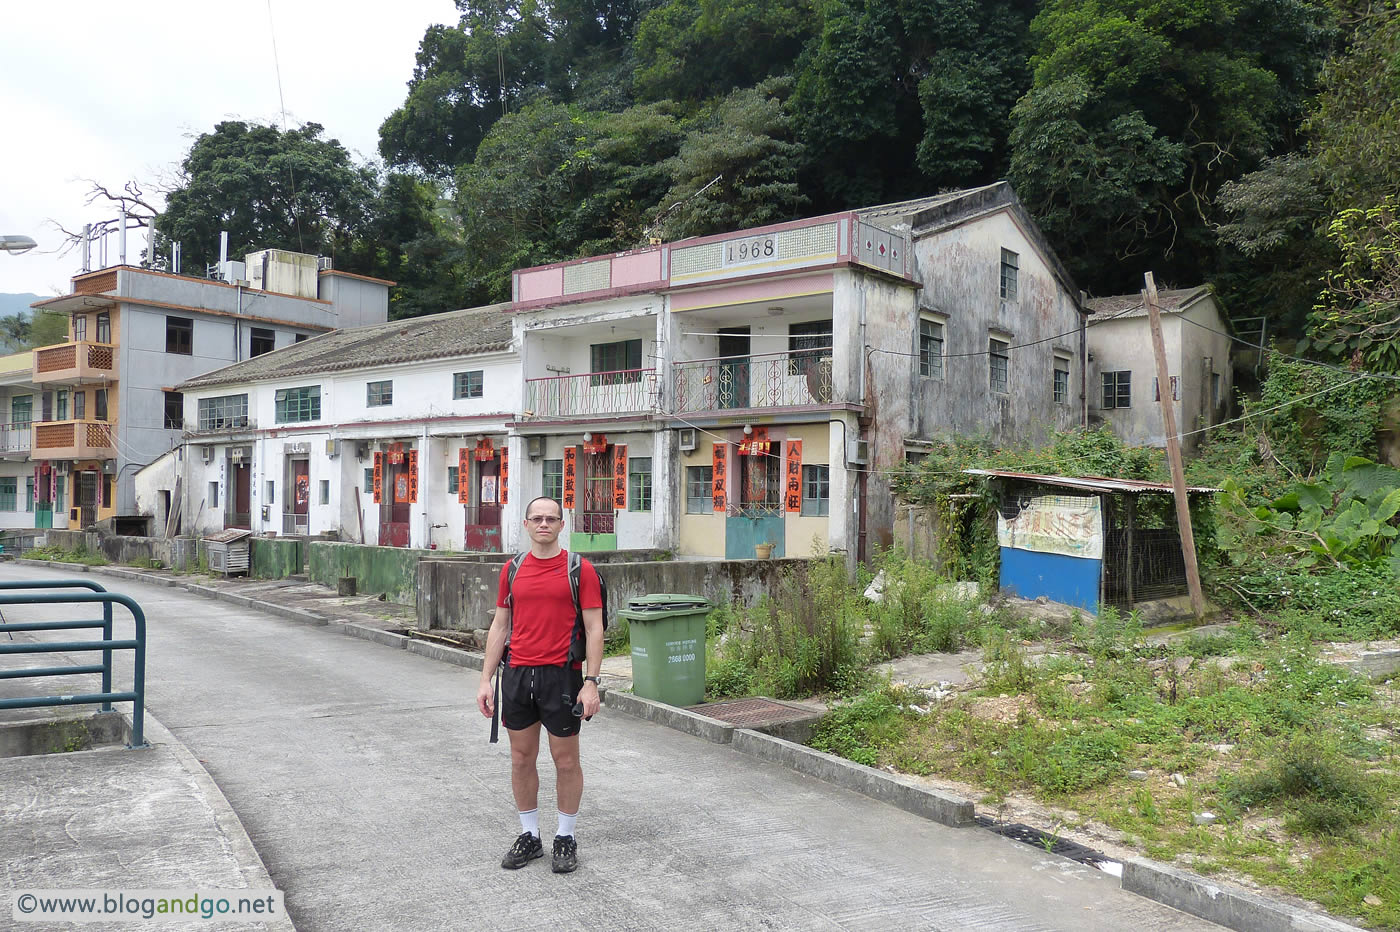 Last House in Luk Keng Village